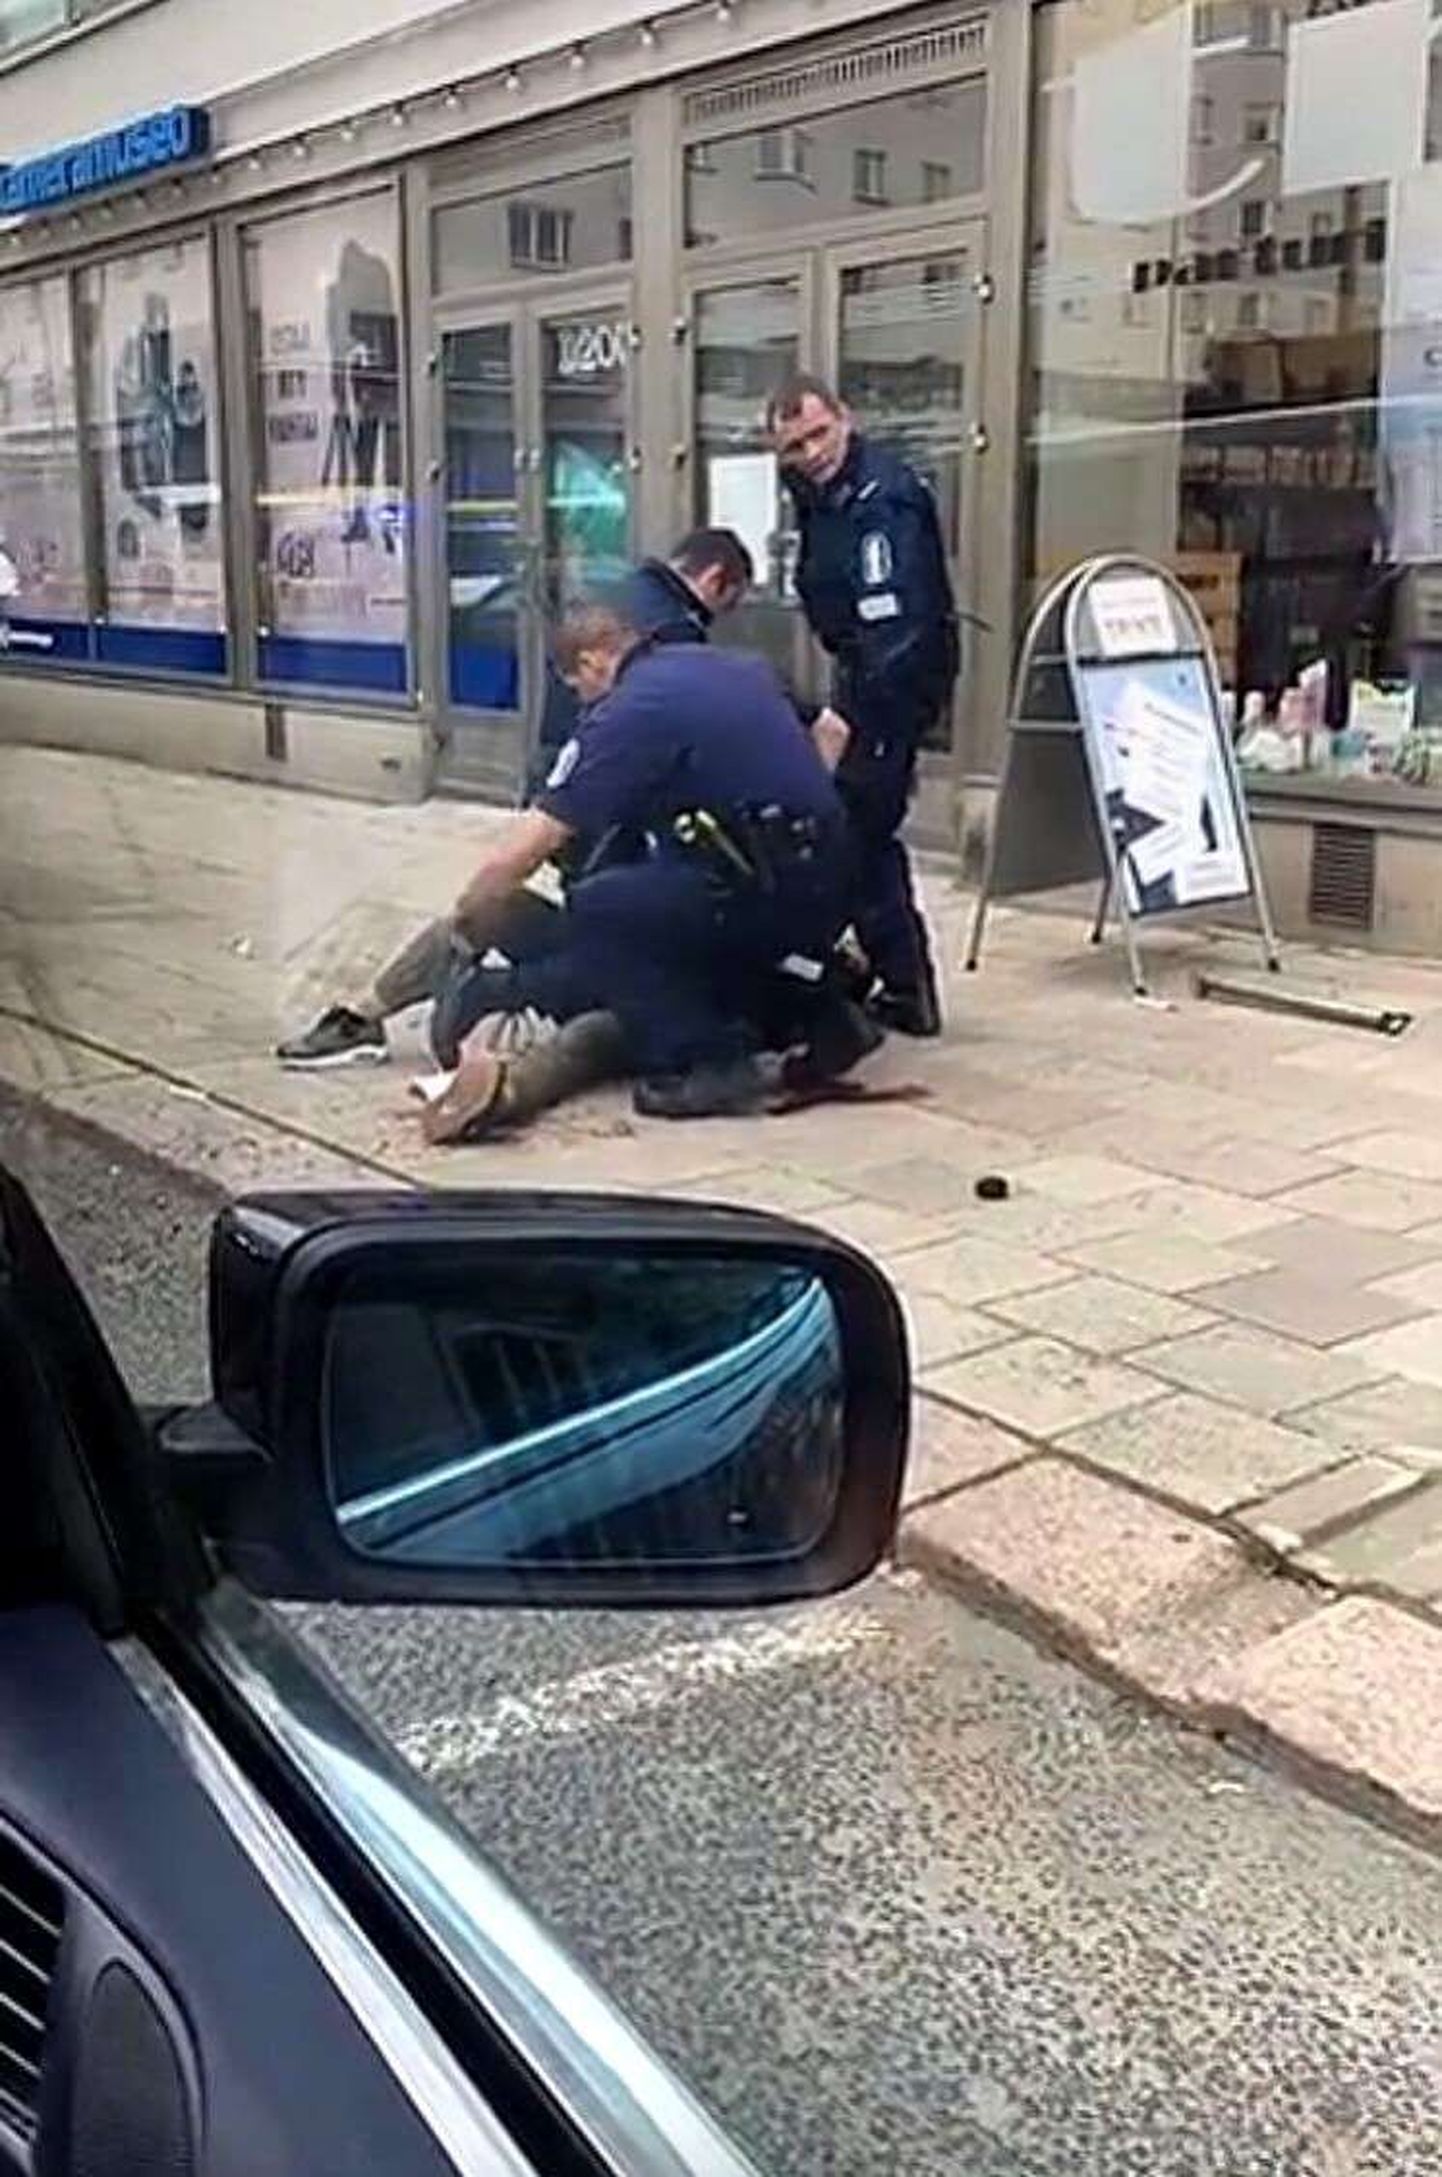 Soome politsei Turus inimesi noaga rünnanud meest kinni pidamas.